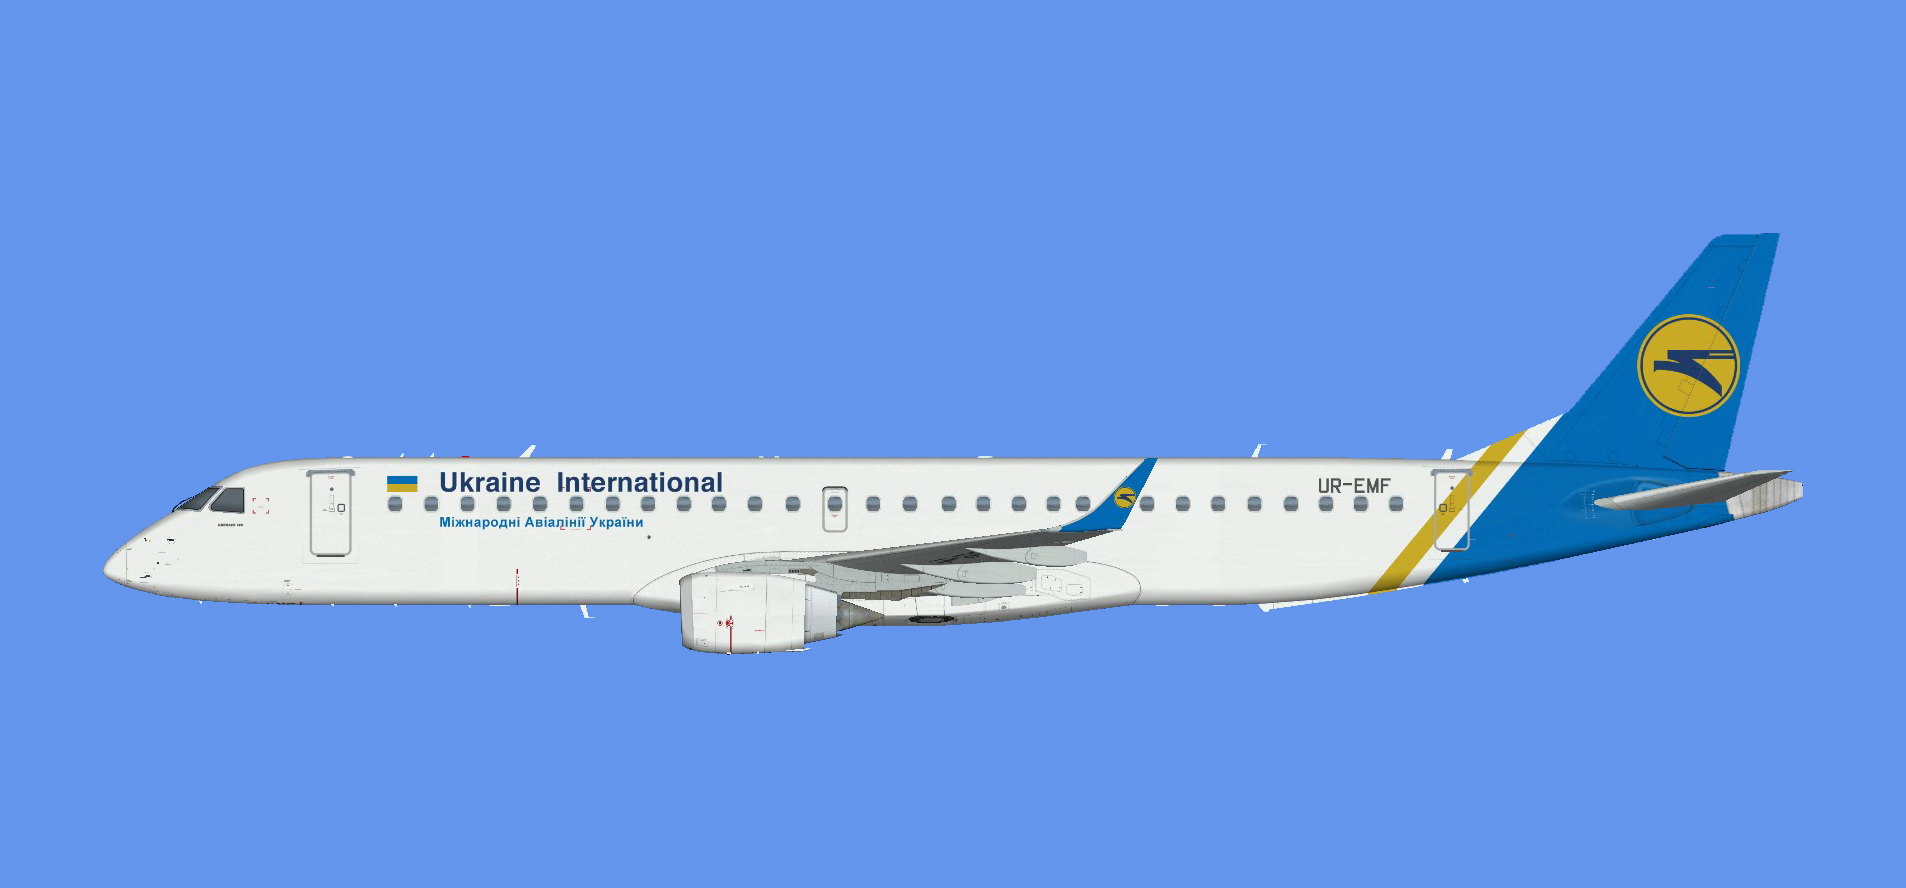 Ukraine International Embraer E-195 (FSPXAI)